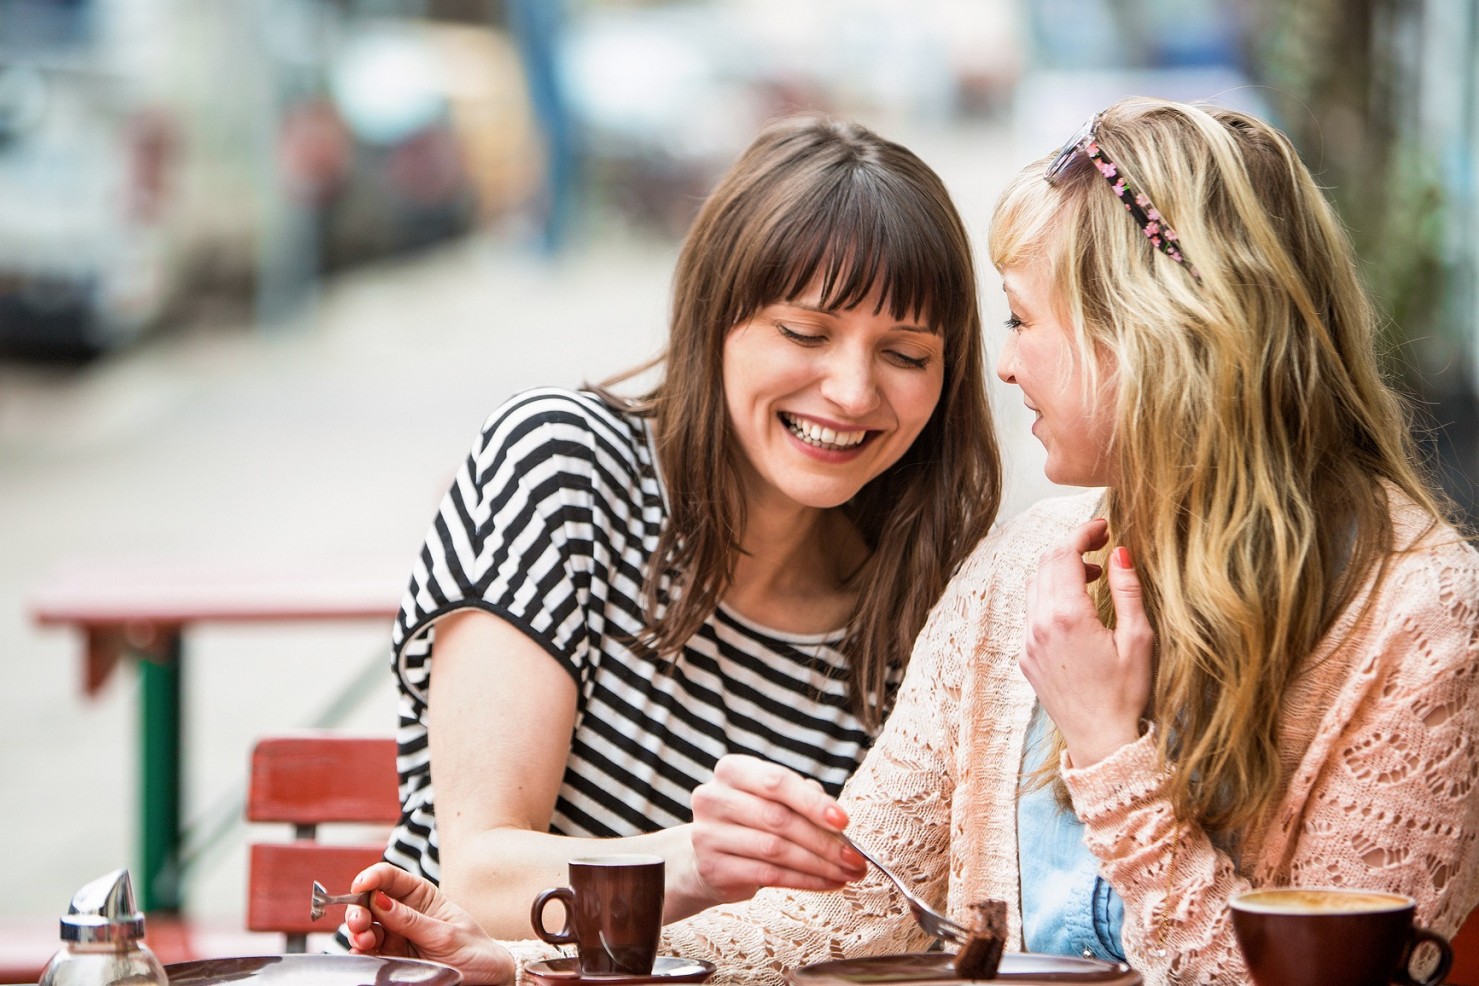 Zwei Freundinnen, beide circa 30 Jahre alt, sitzen draußen in einem Café. Eine der Frauen nimmt mit der Gabel das letzte Stück Brownie vom Teller ihrer Freundin.